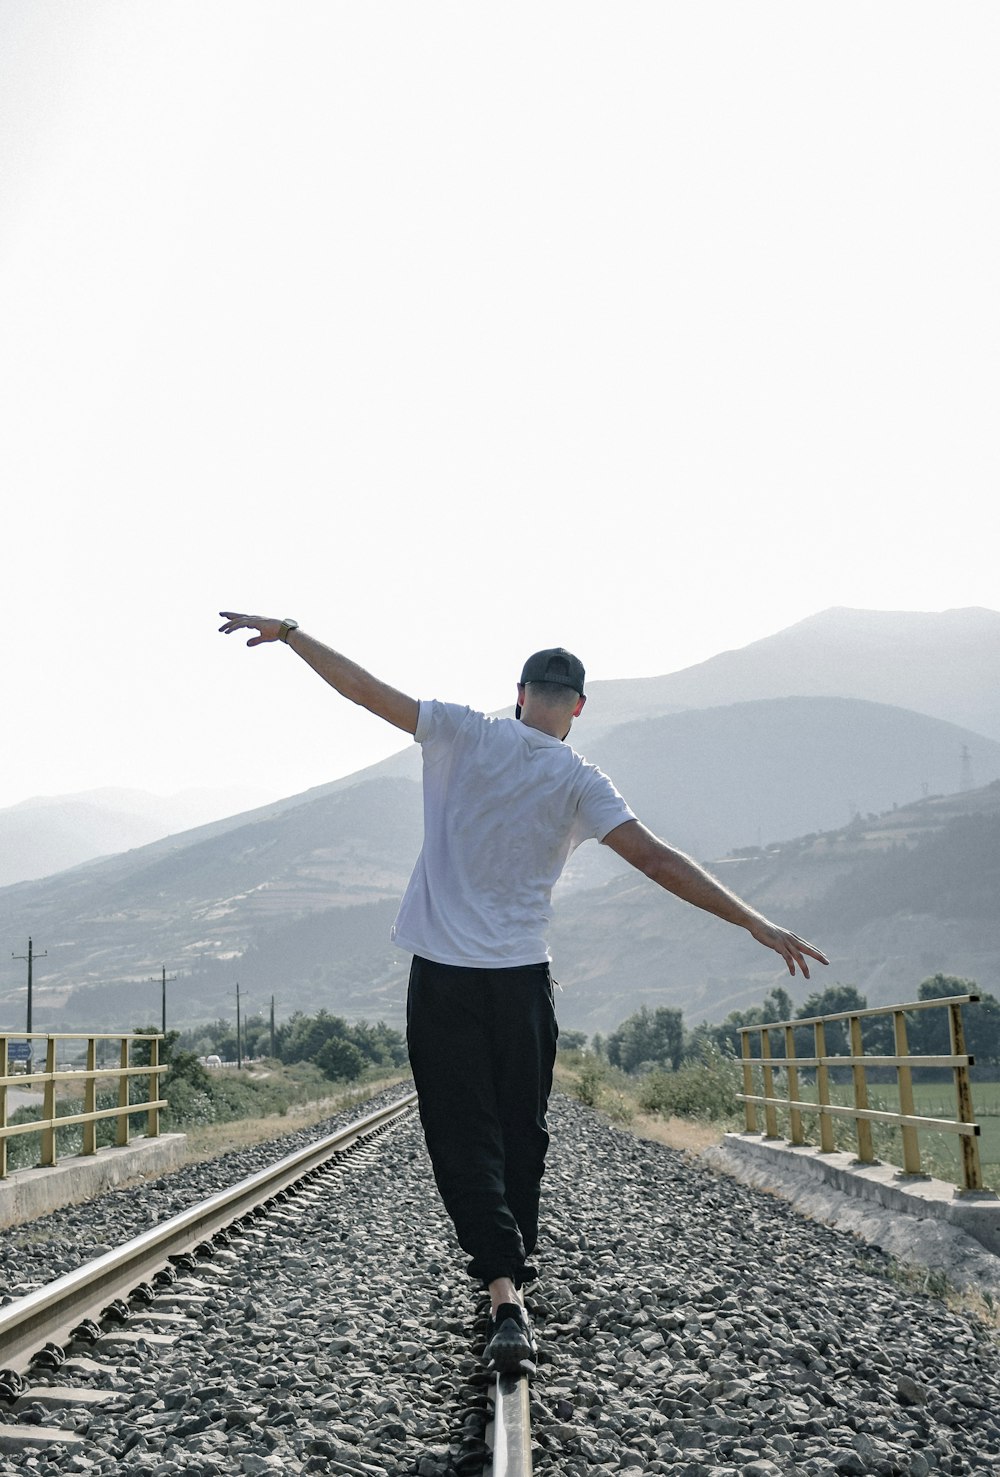 a man riding a skateboard down a train track